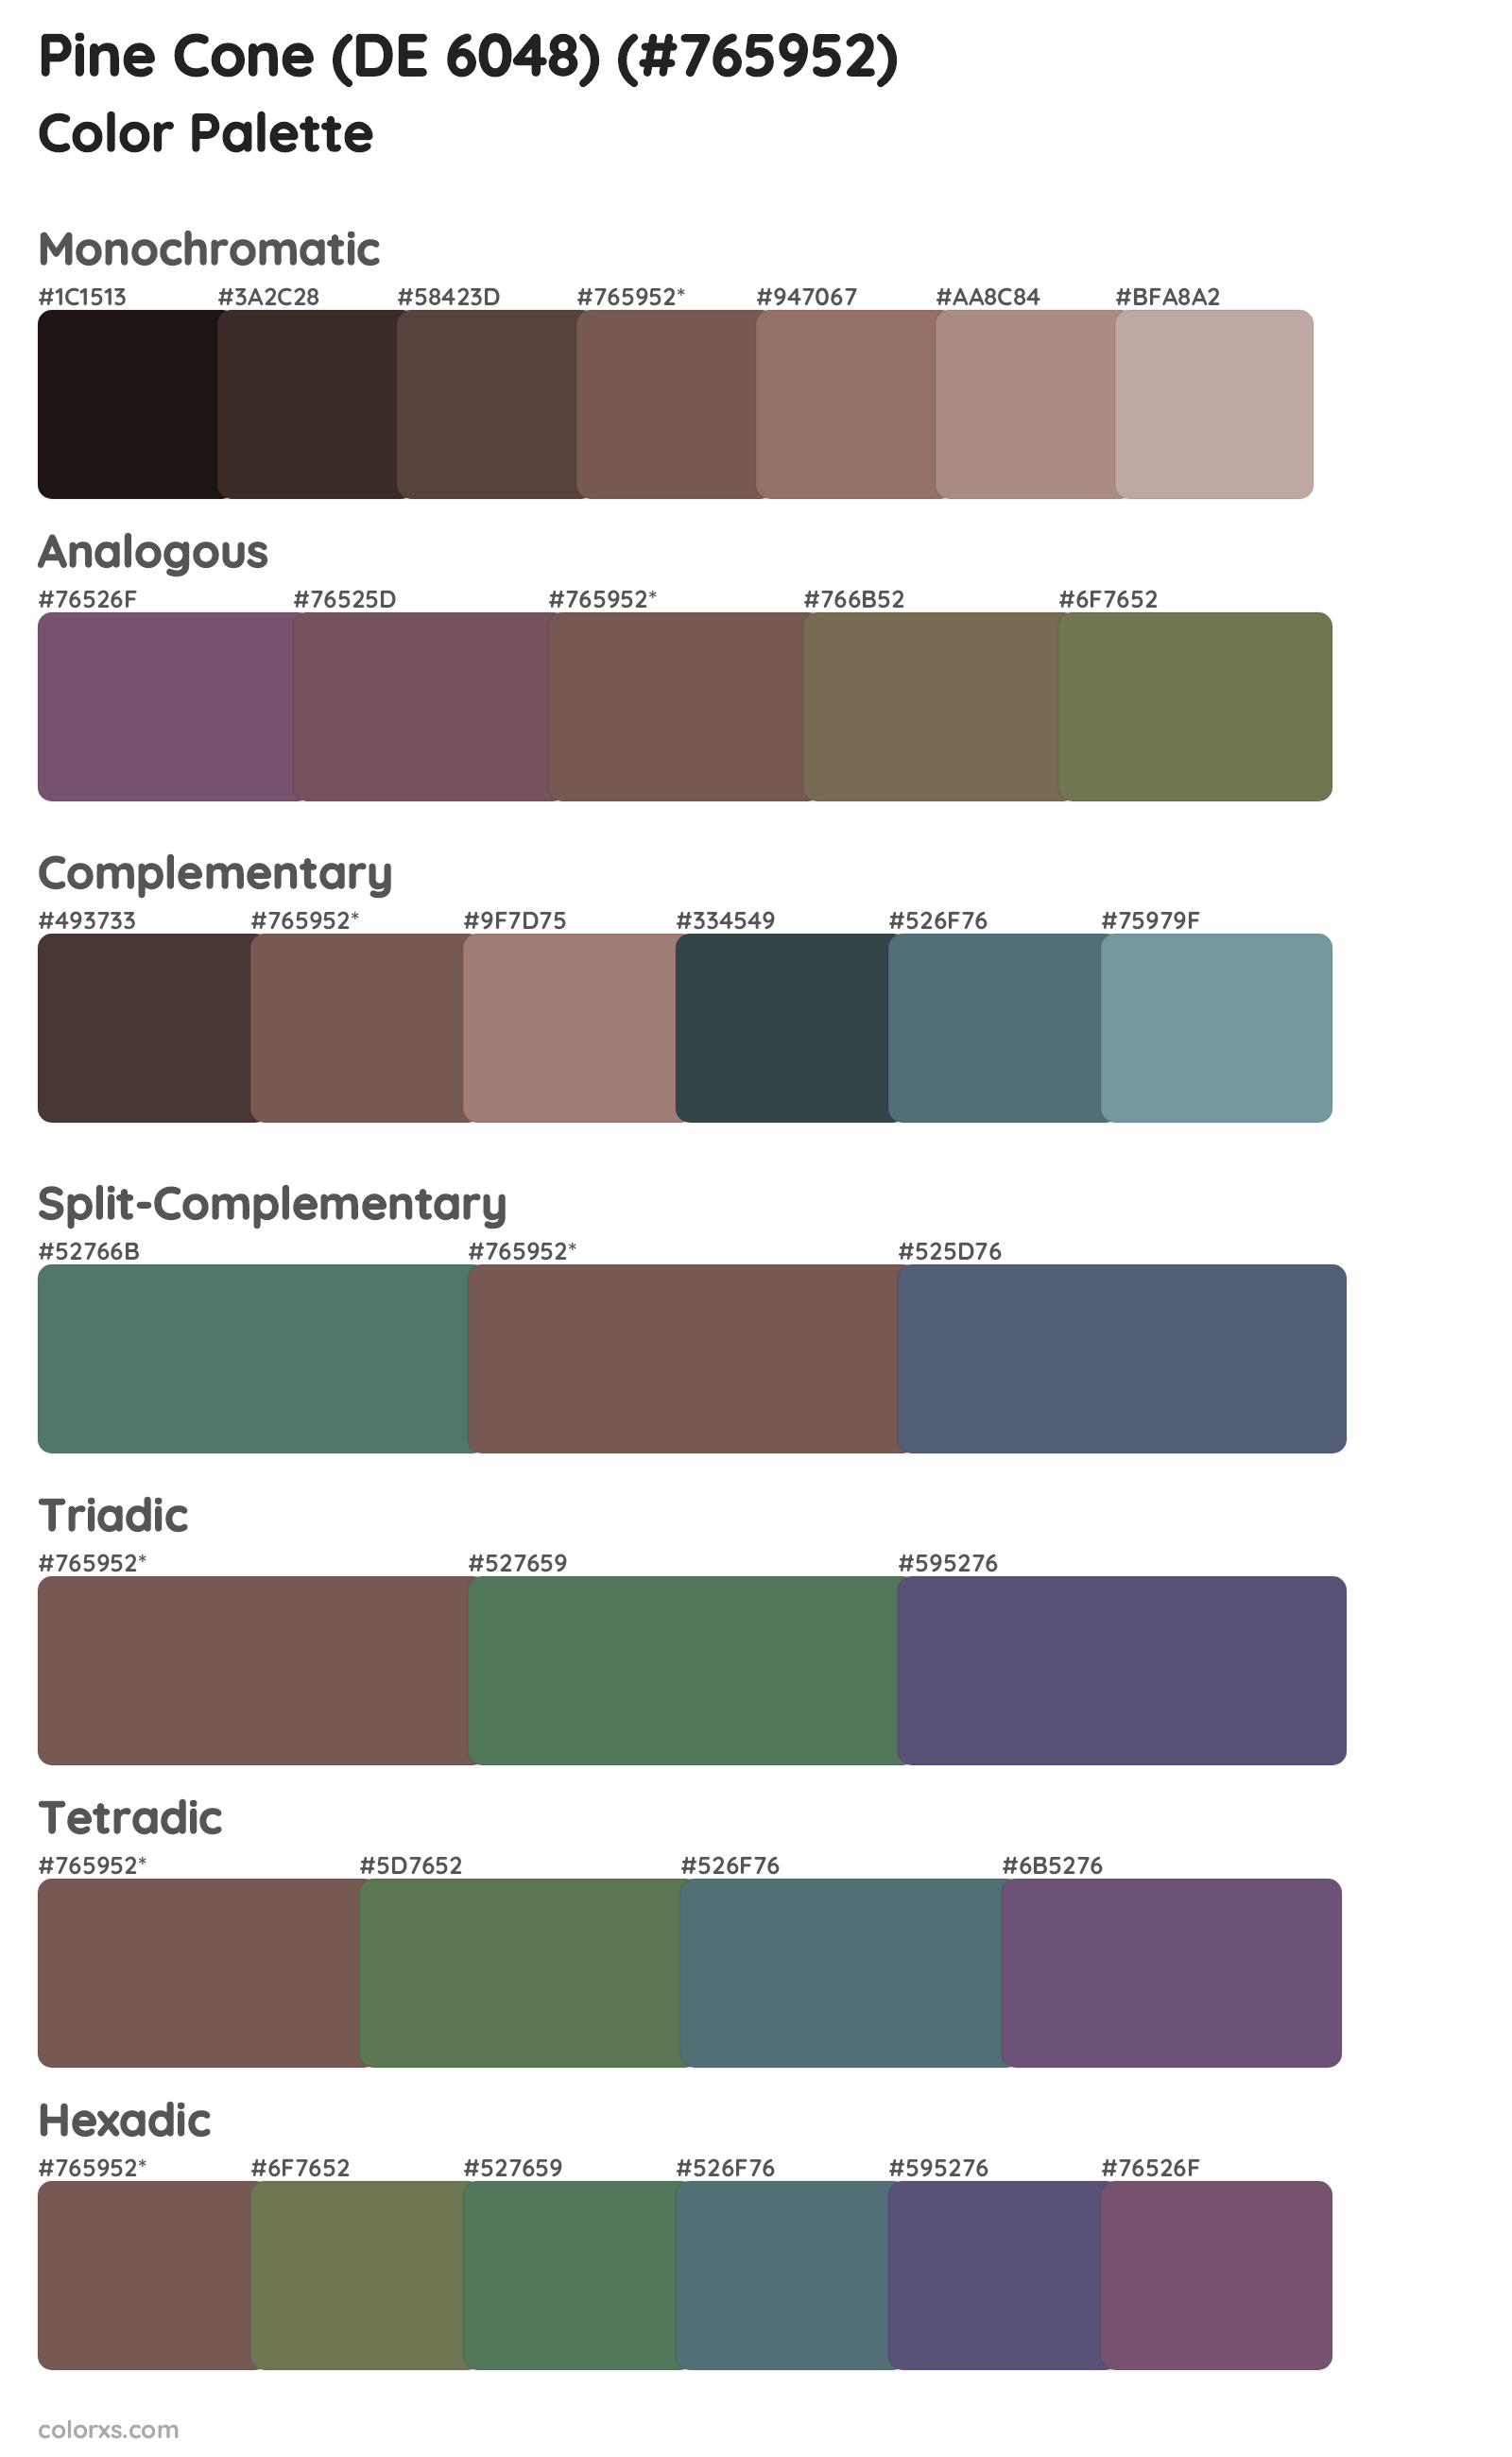 Pine Cone (DE 6048) Color Scheme Palettes